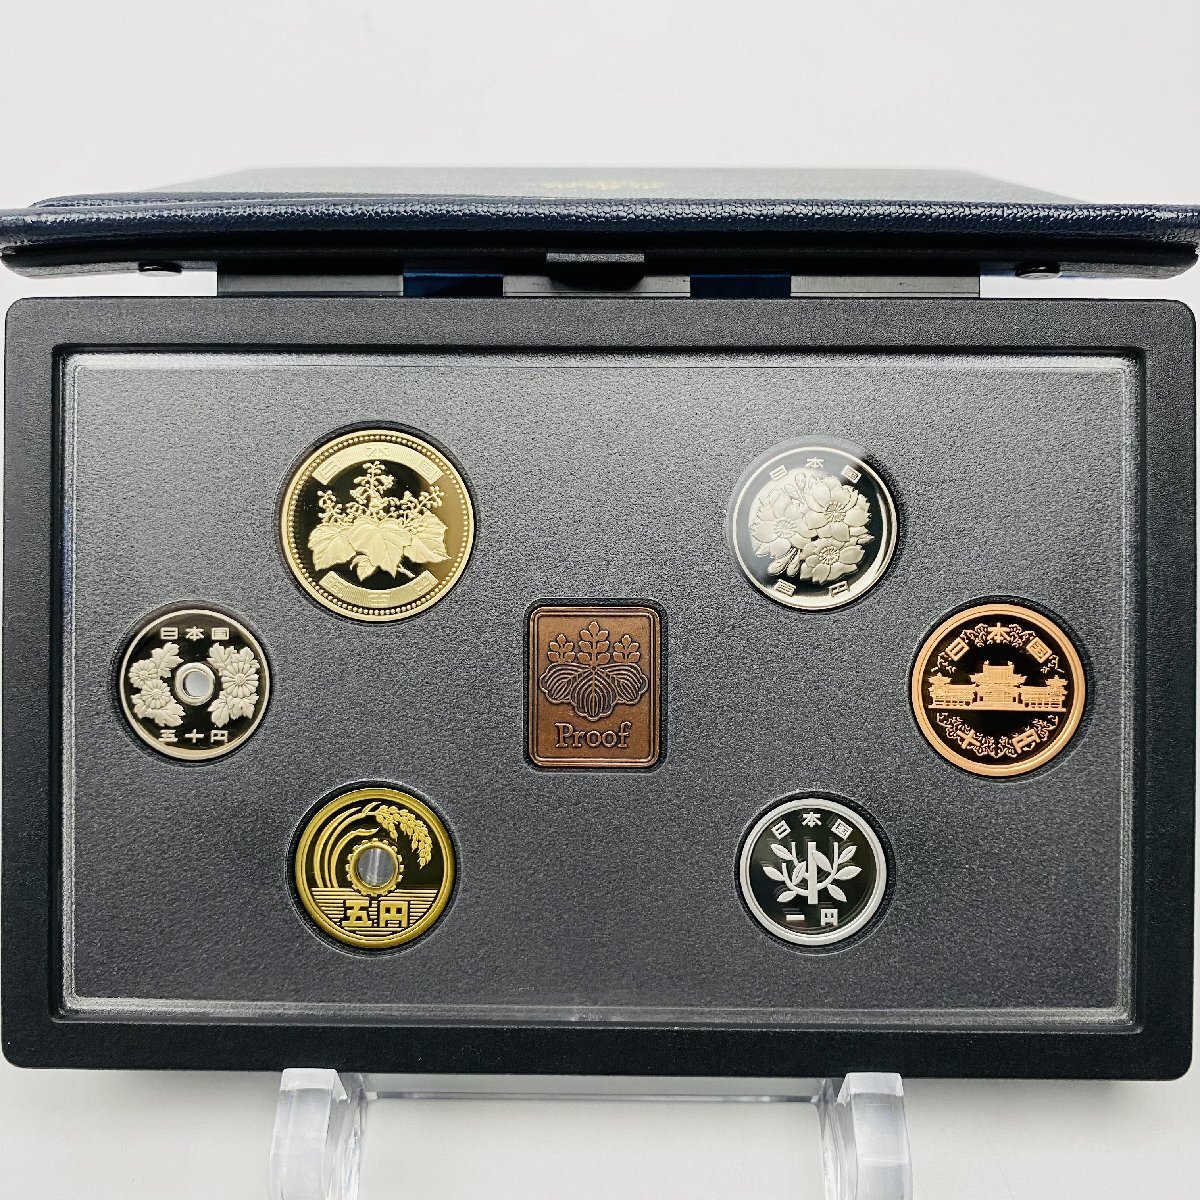 2007年 平成19年 通常プルーフ貨幣セット 額面666円 年銘板有 全揃い 記念硬貨 記念貨幣 貨幣組合 日本円 限定貨幣 コレクション P2007の画像2